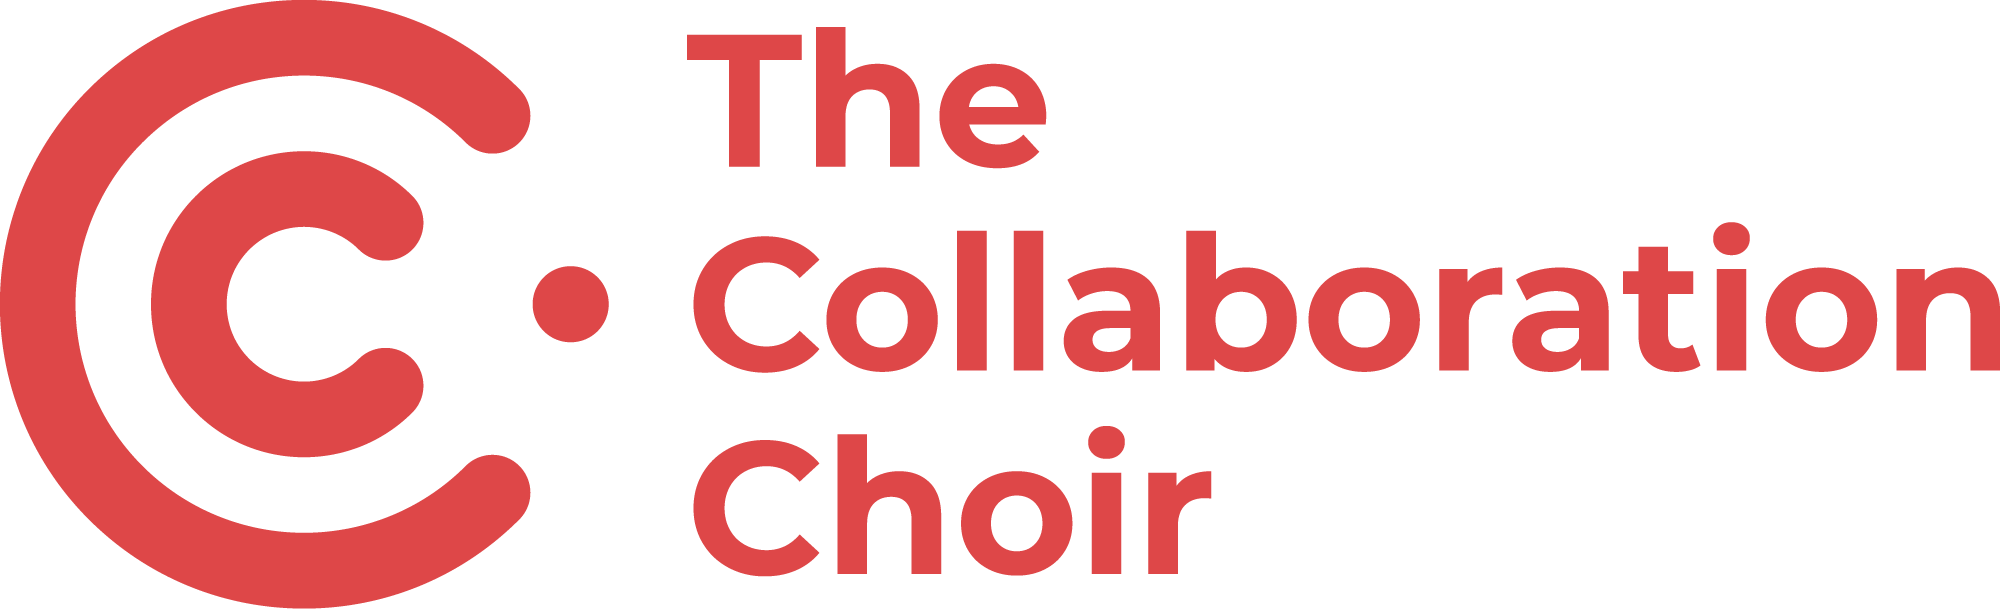 The Collaboration Choir